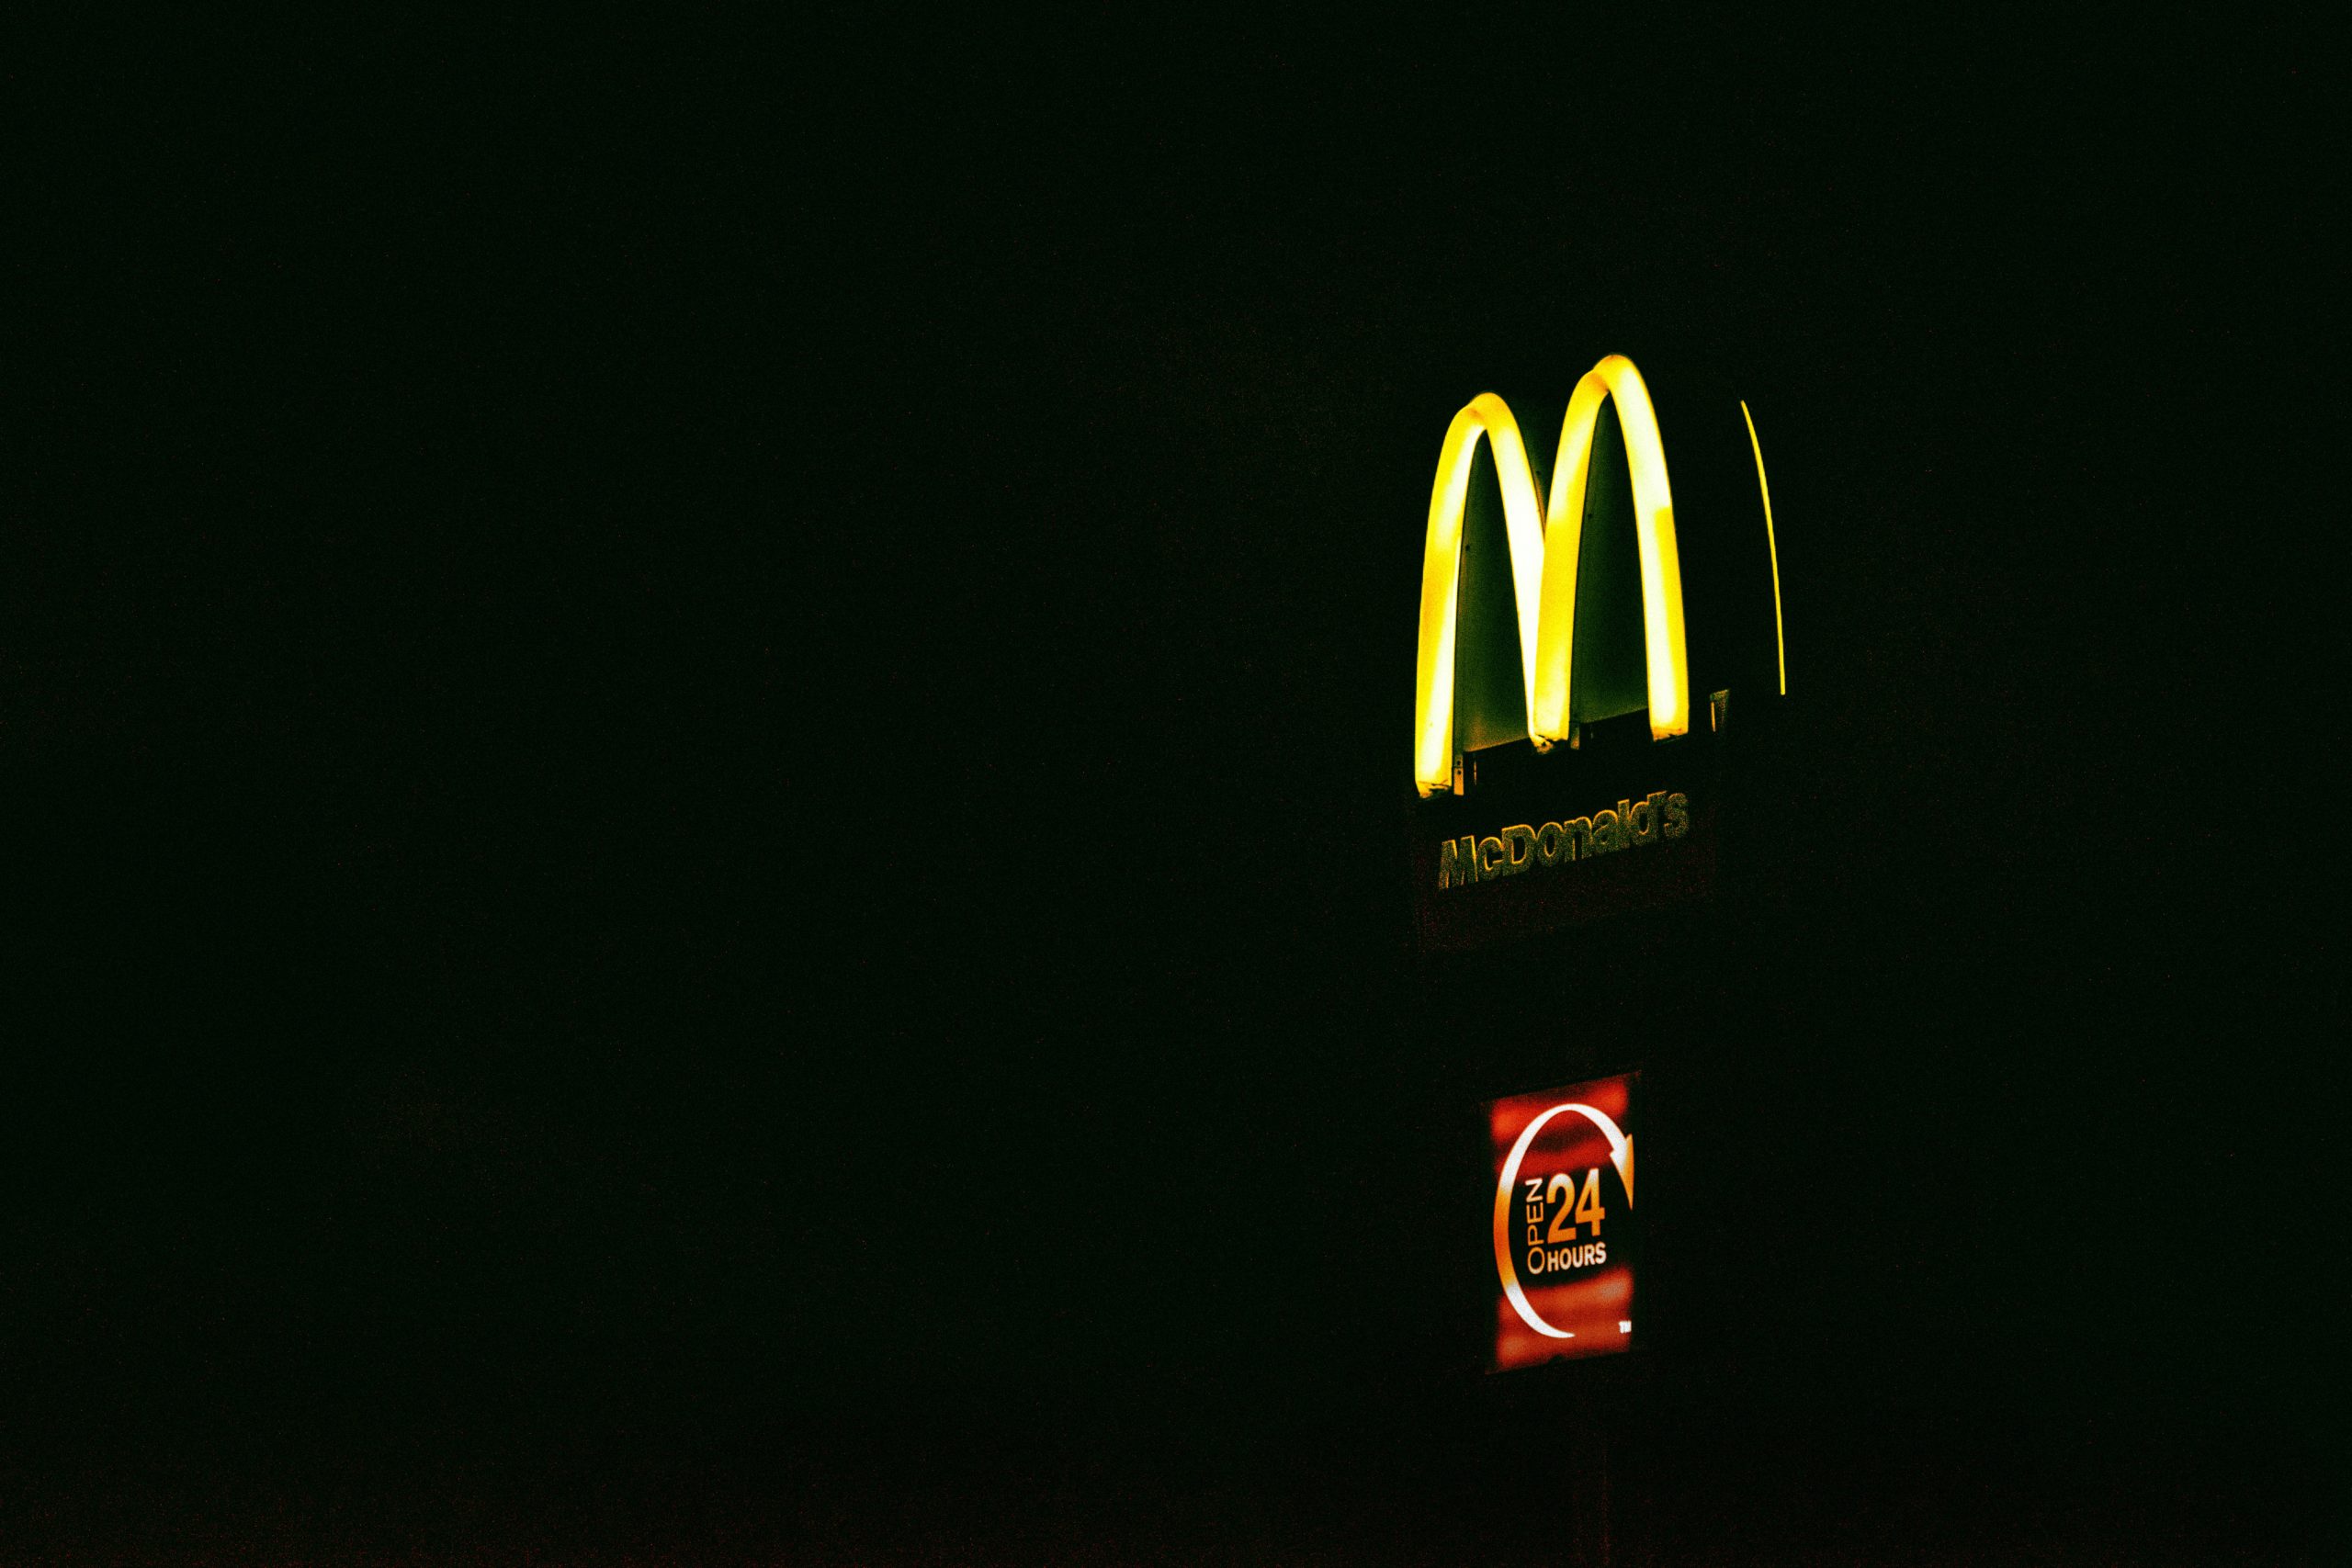 Classic McDonald’s logo displayed